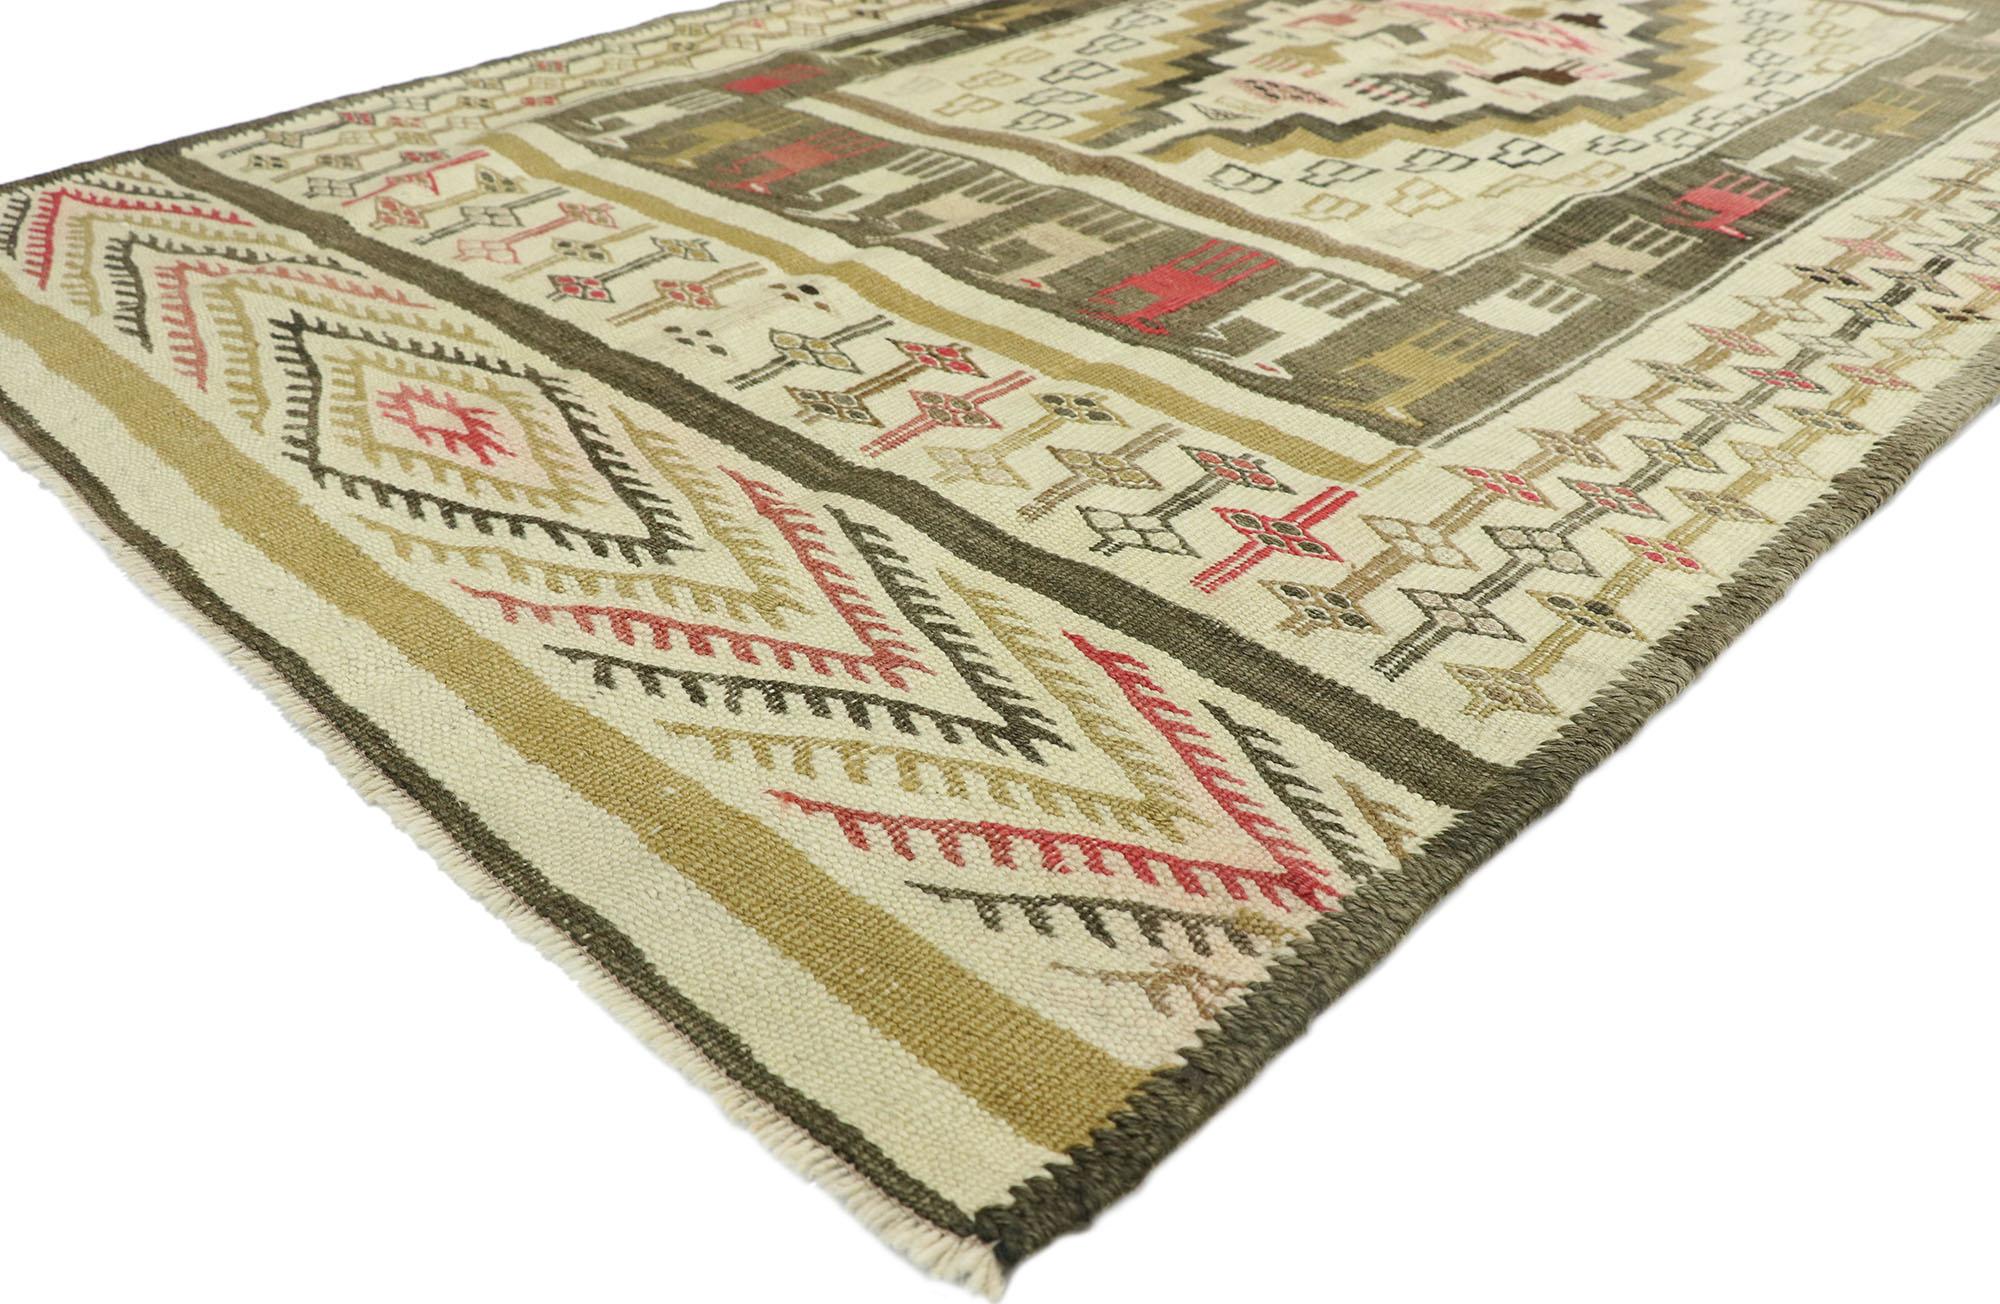 52725, türkischer Vintage-Kilim-Teppich im rustikalen Lodge-Stil mit modernen Tribal-Anklängen. Dieser handgewebte türkische Kelim-Teppich aus Wolle ist maskulin und geometrisch. Er besteht aus einem zentralen Rechteck, das ein gestuftes